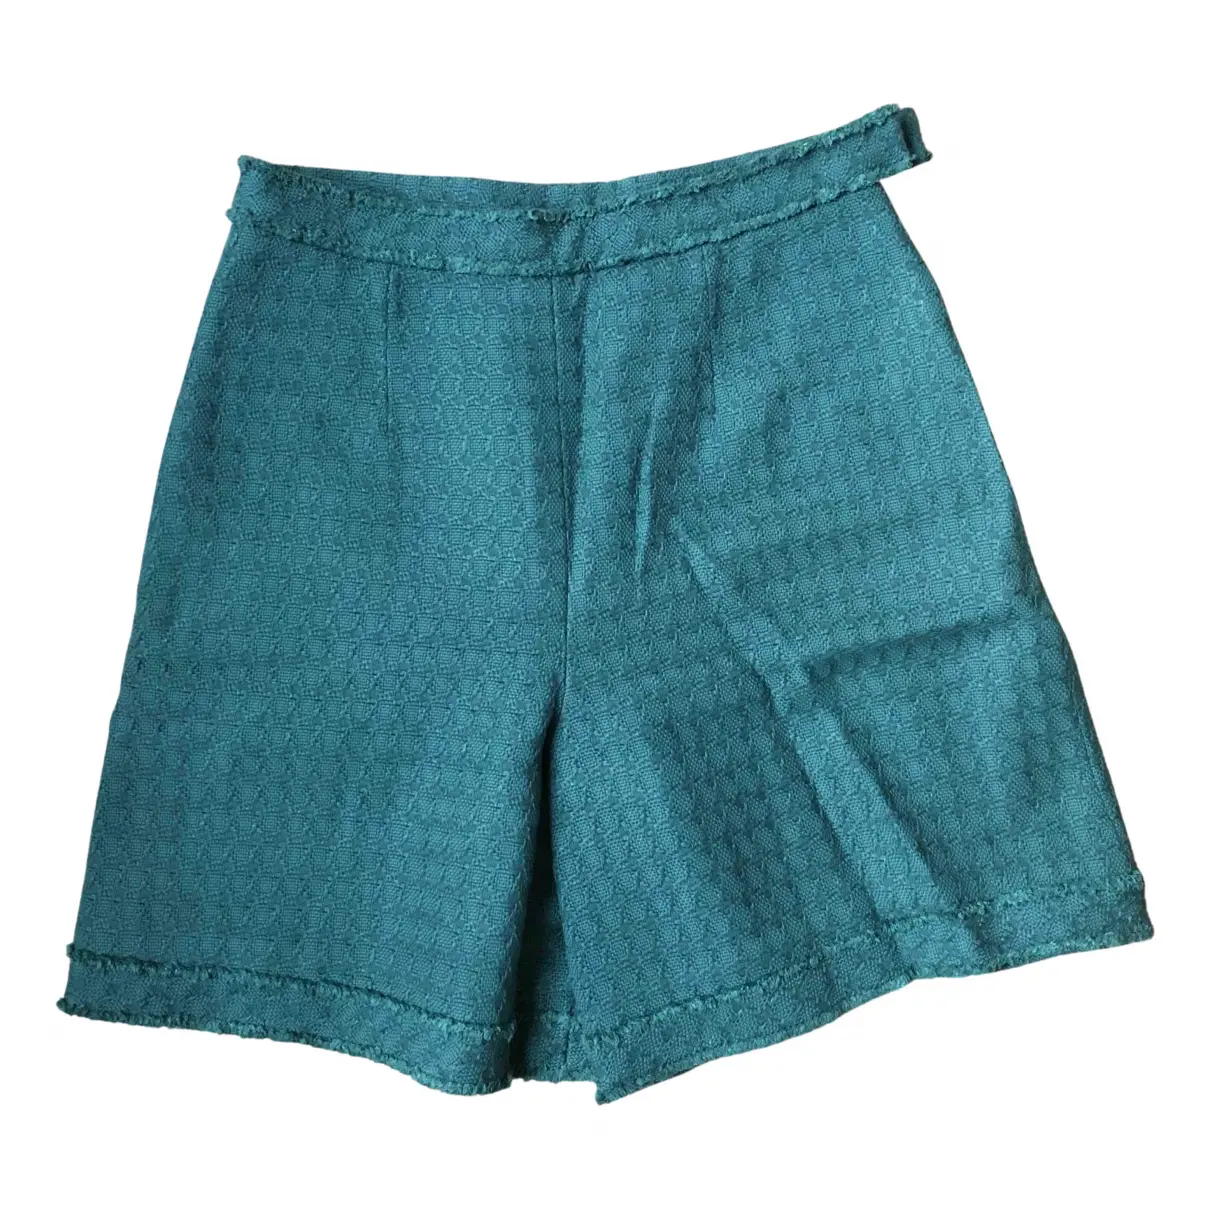 Green Tweed Shorts Chanel